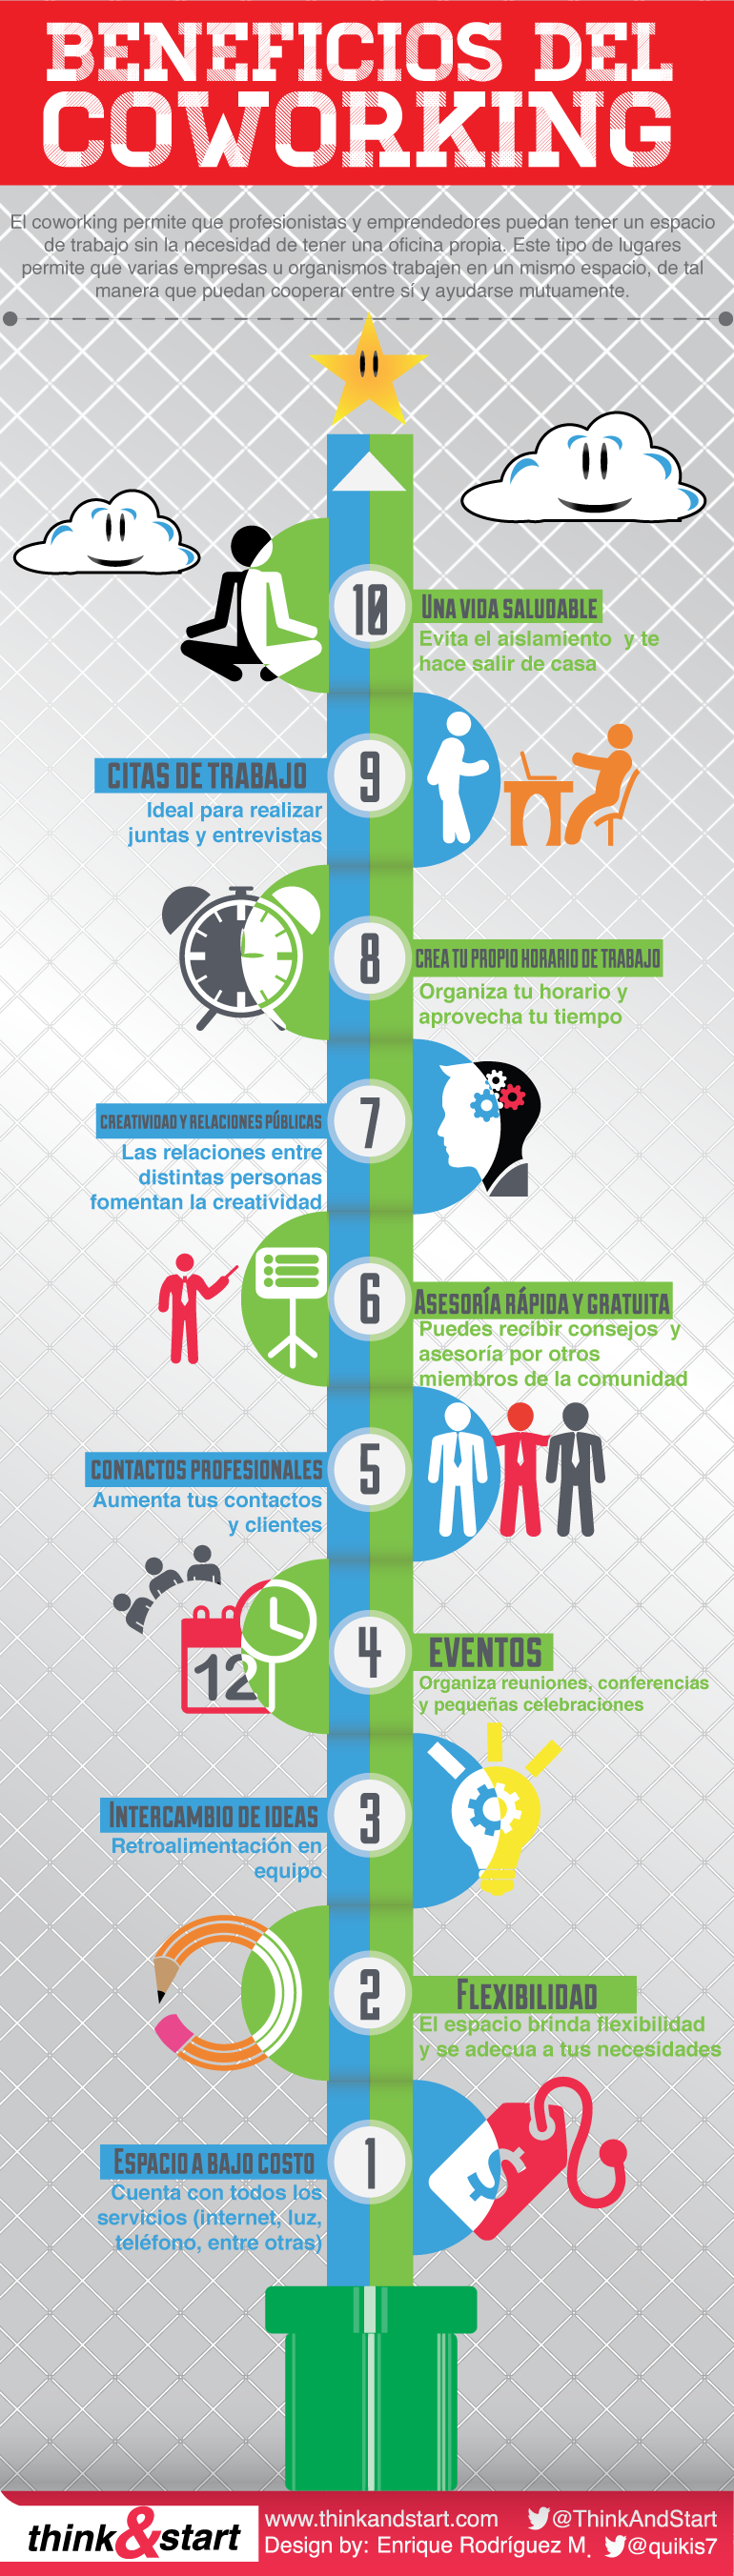 Infografía - Beneficios del coworking